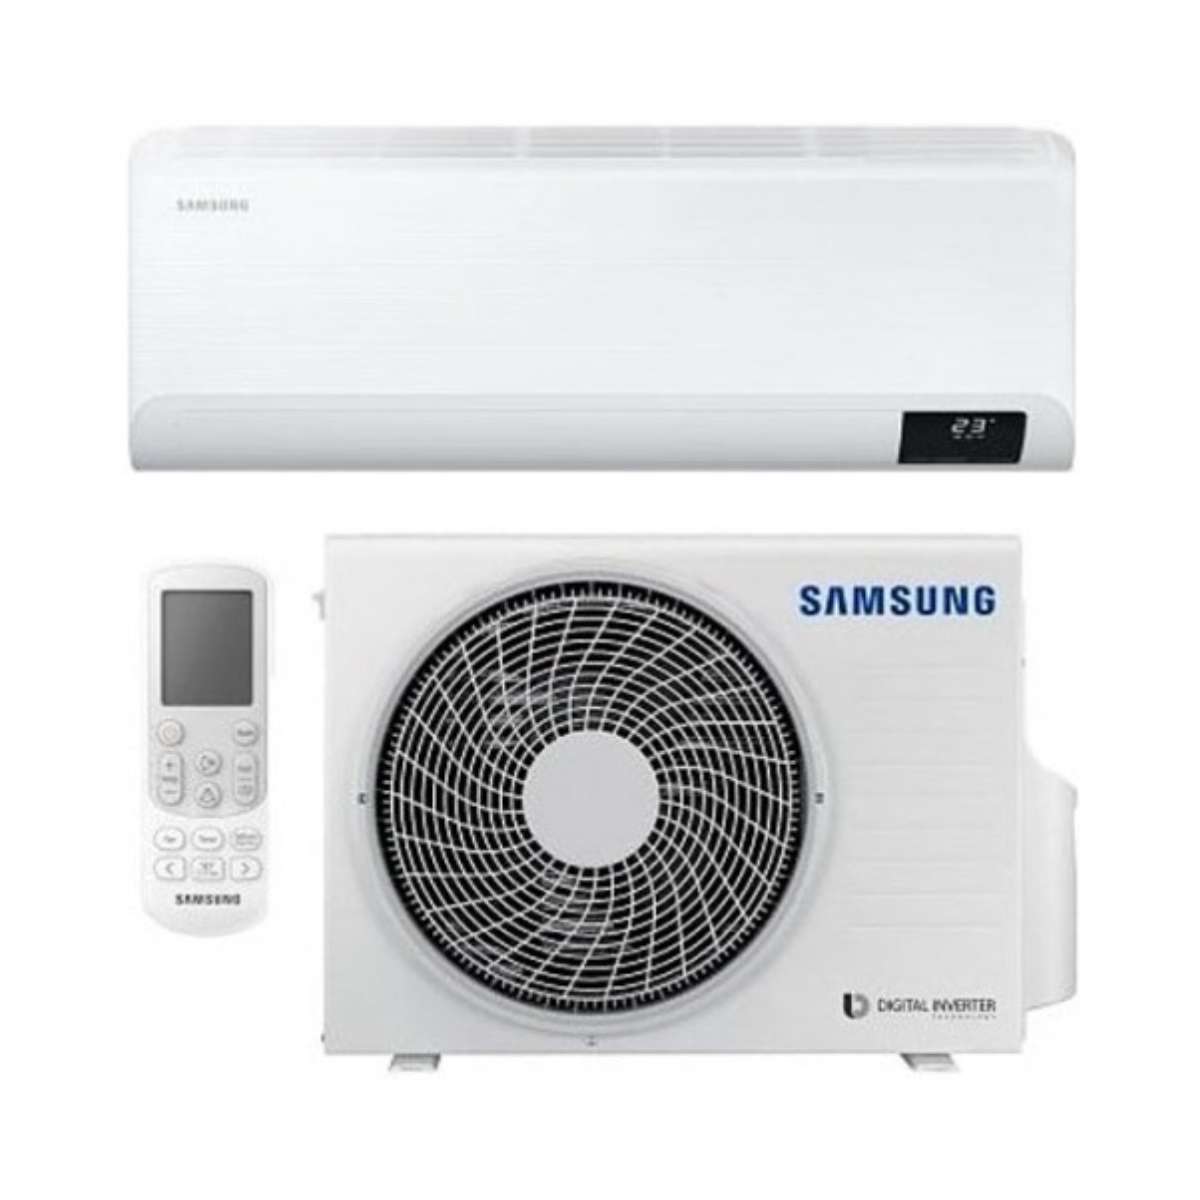 Samsung CEBU 6,5 kW 24000 BTU Split-Klimaanlage mit WLAN mit der Referenz F-AR24CBU von der Marke SAMSUNG